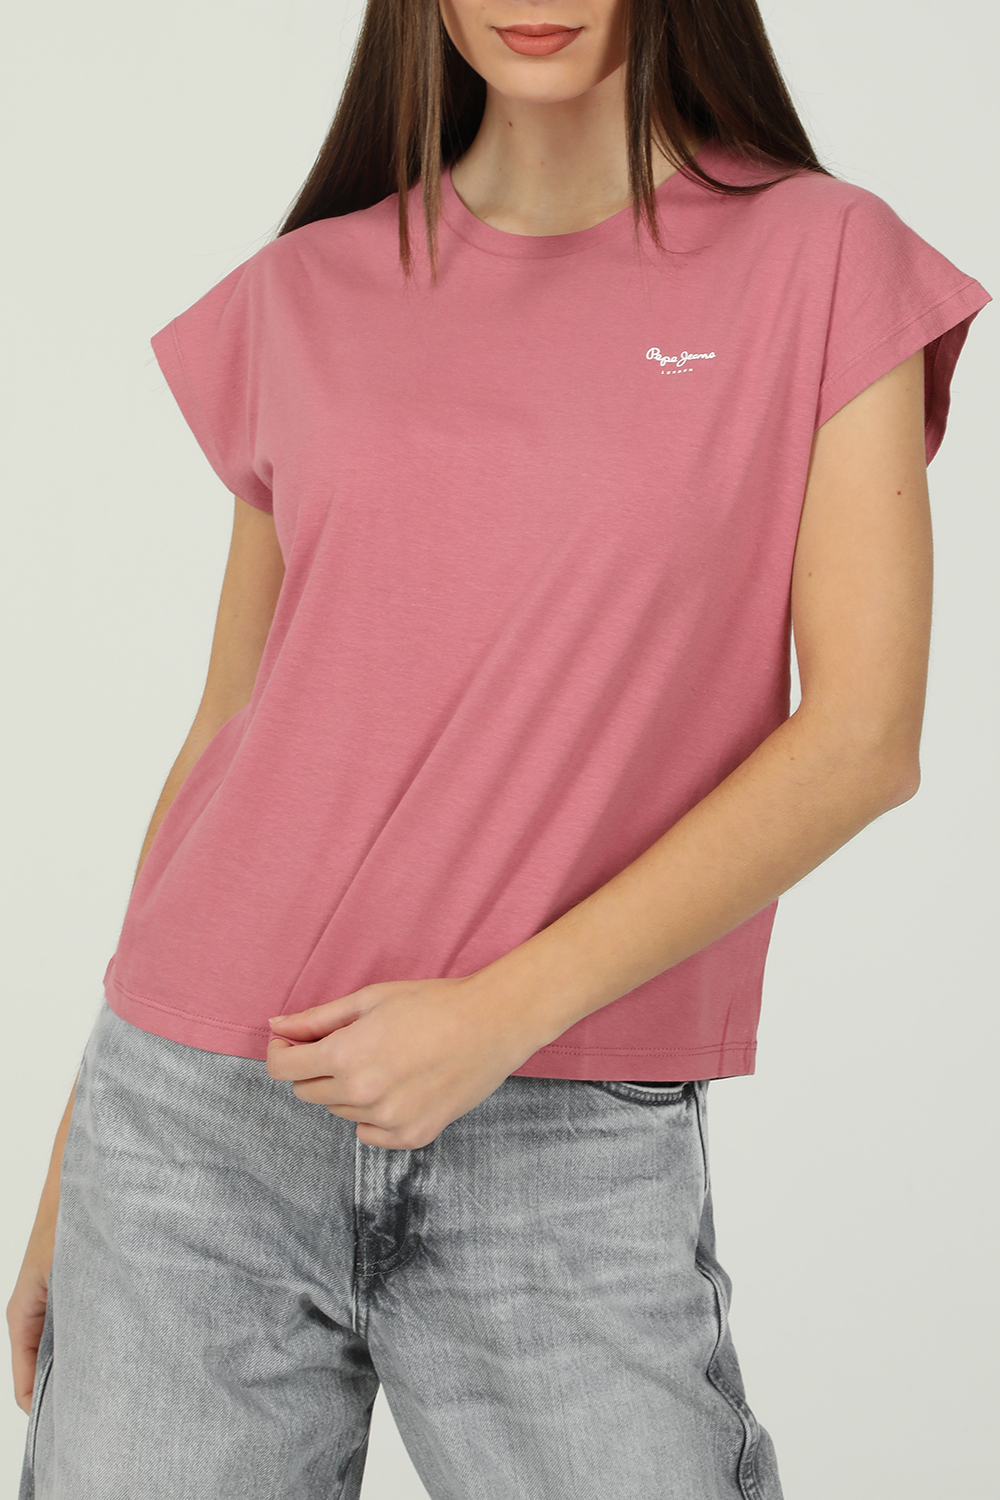 PEPE JEANS – Γυναικεια κοντομανικη μπλουζα PEPE JEANS BLOOM ροζ